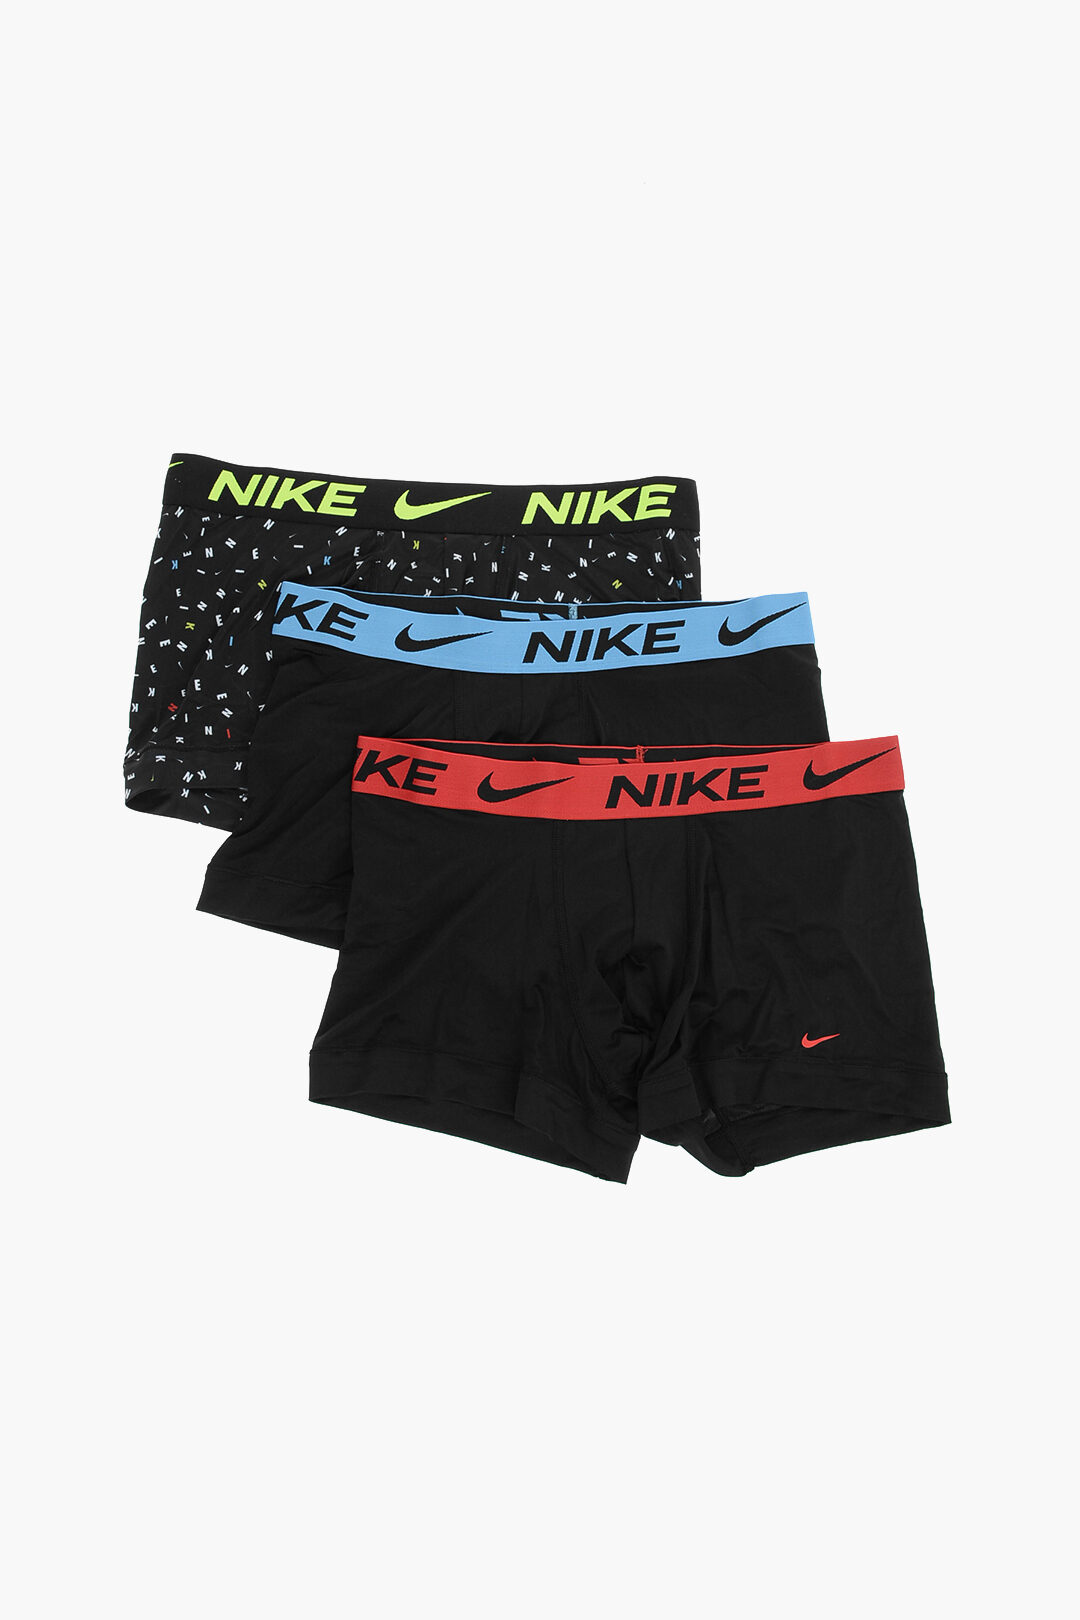 Nike logoed Drawstring Waist DRI-FIT 3 Pairs of Boxers Set men